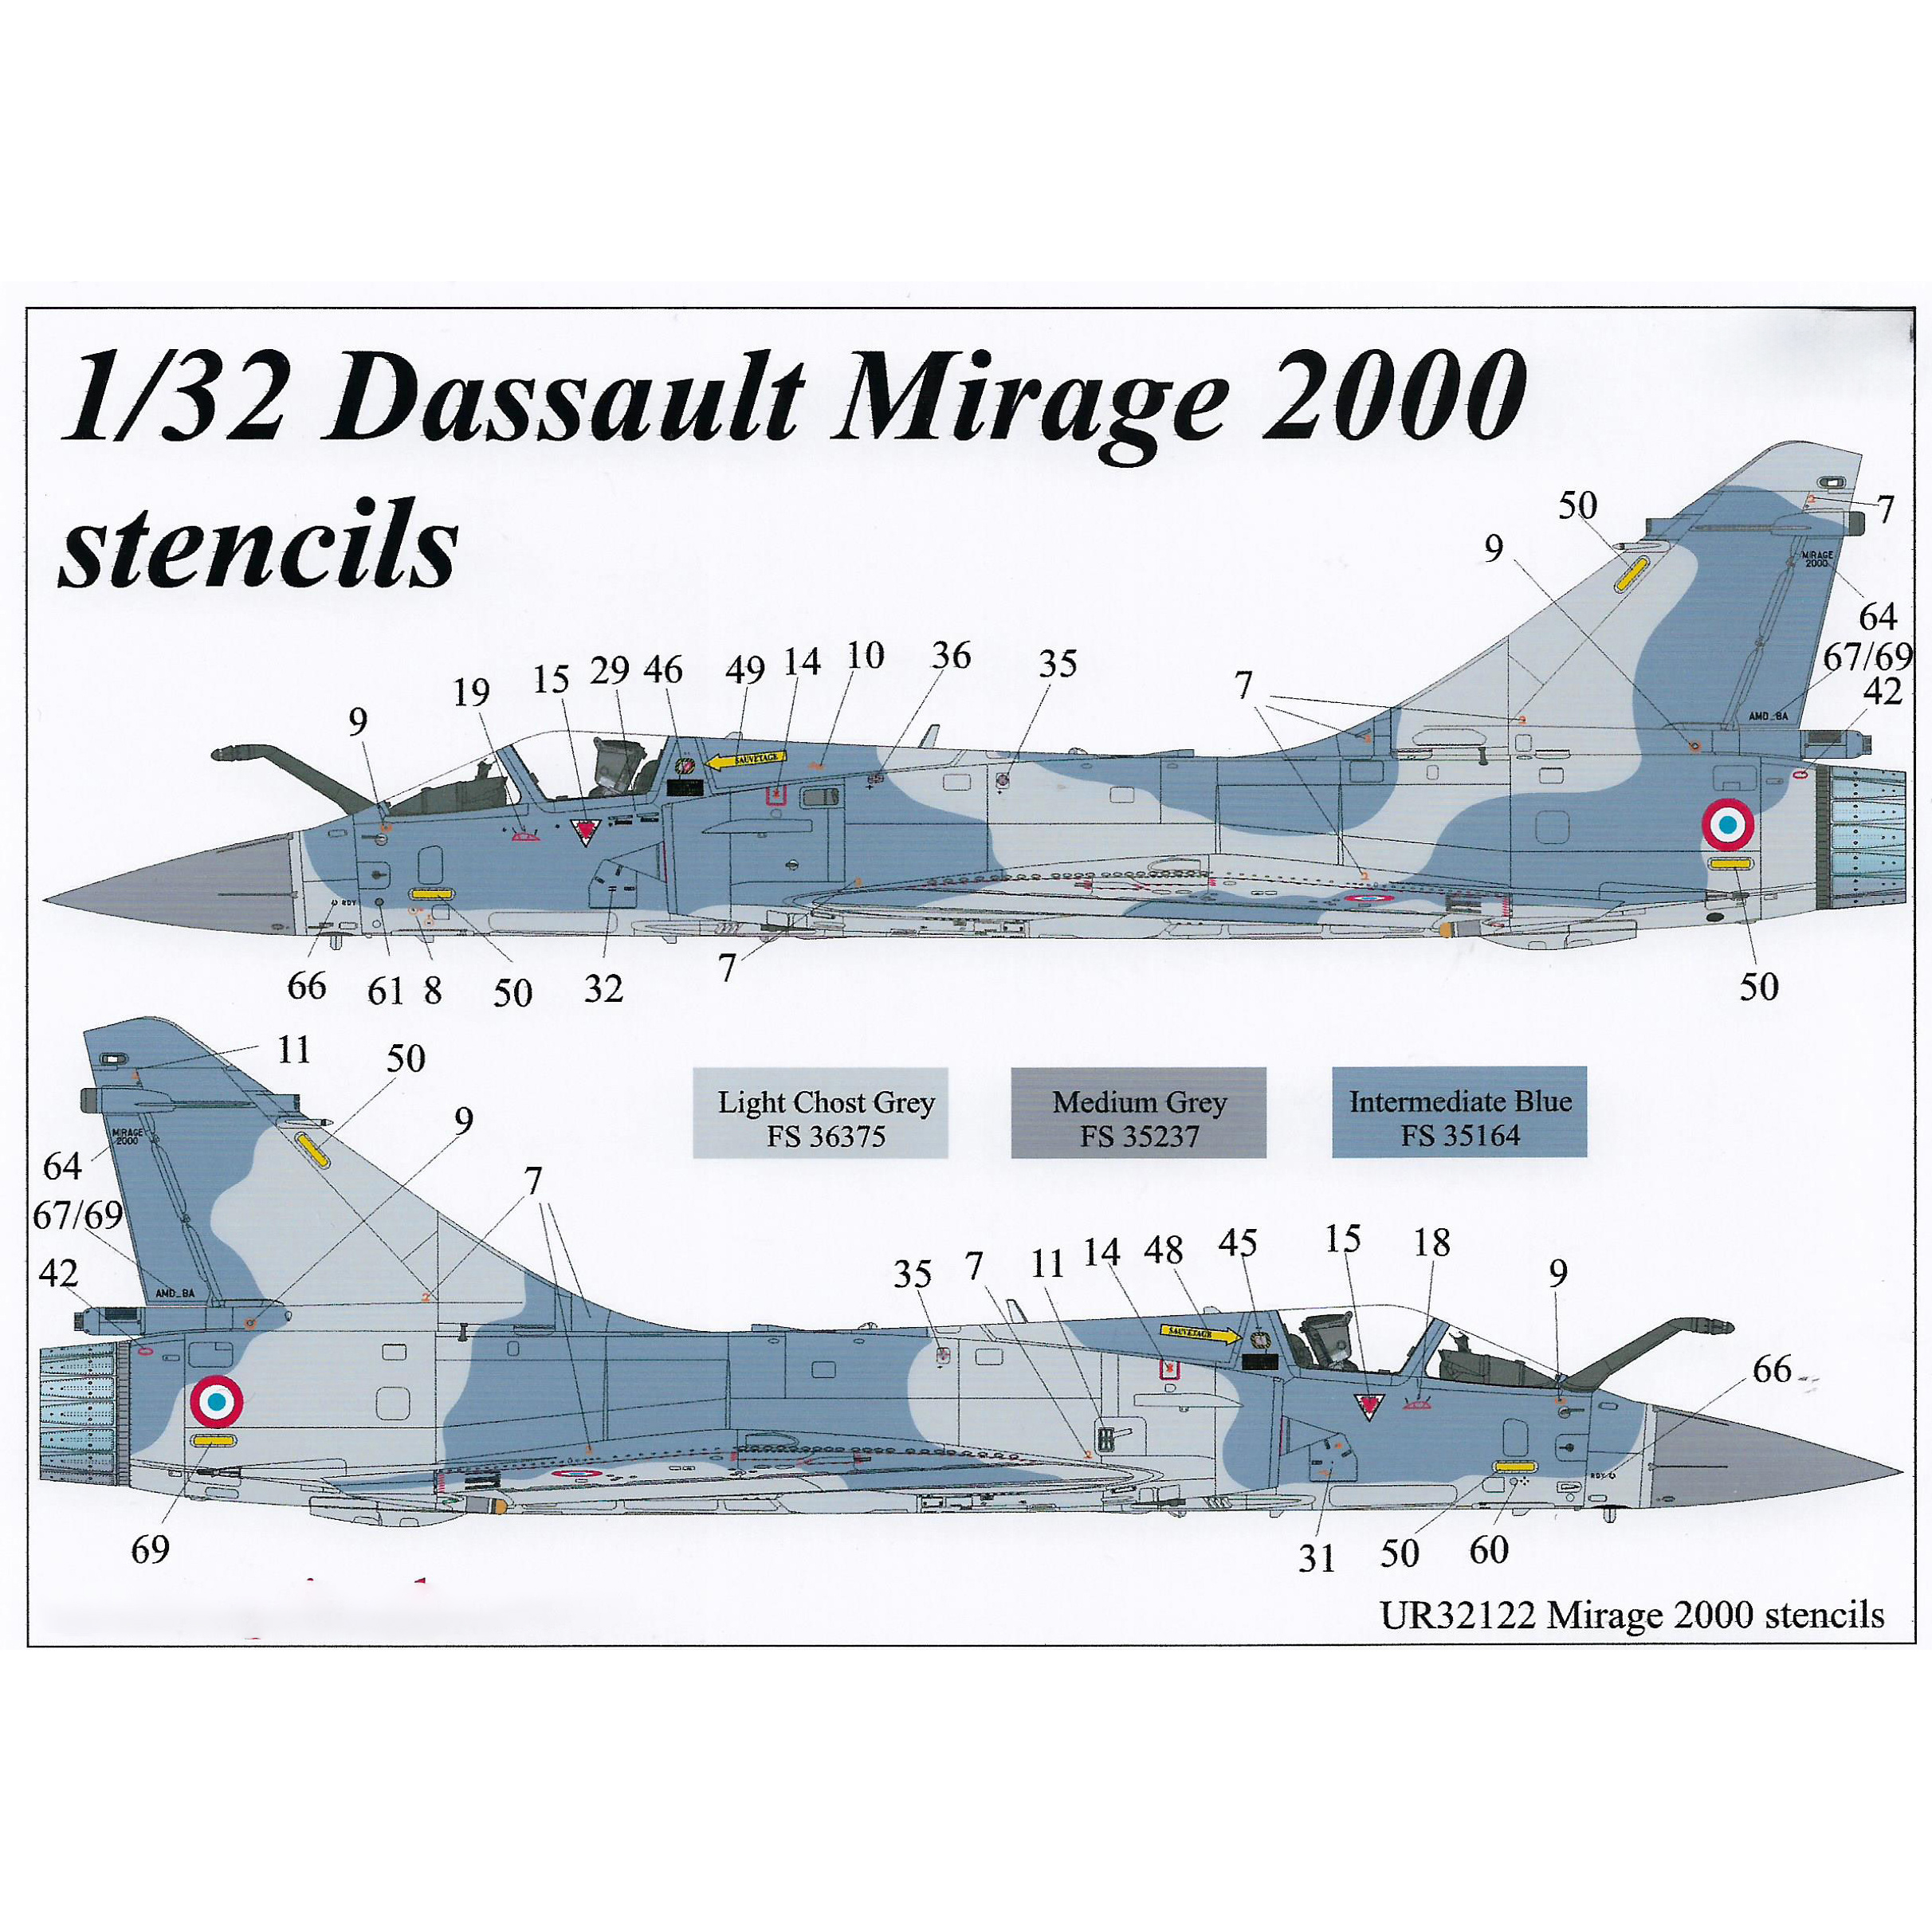 Декали UpRise 1/32 для Dassault Mirage 2000 B/C/D/N, тех. надписи UR32122